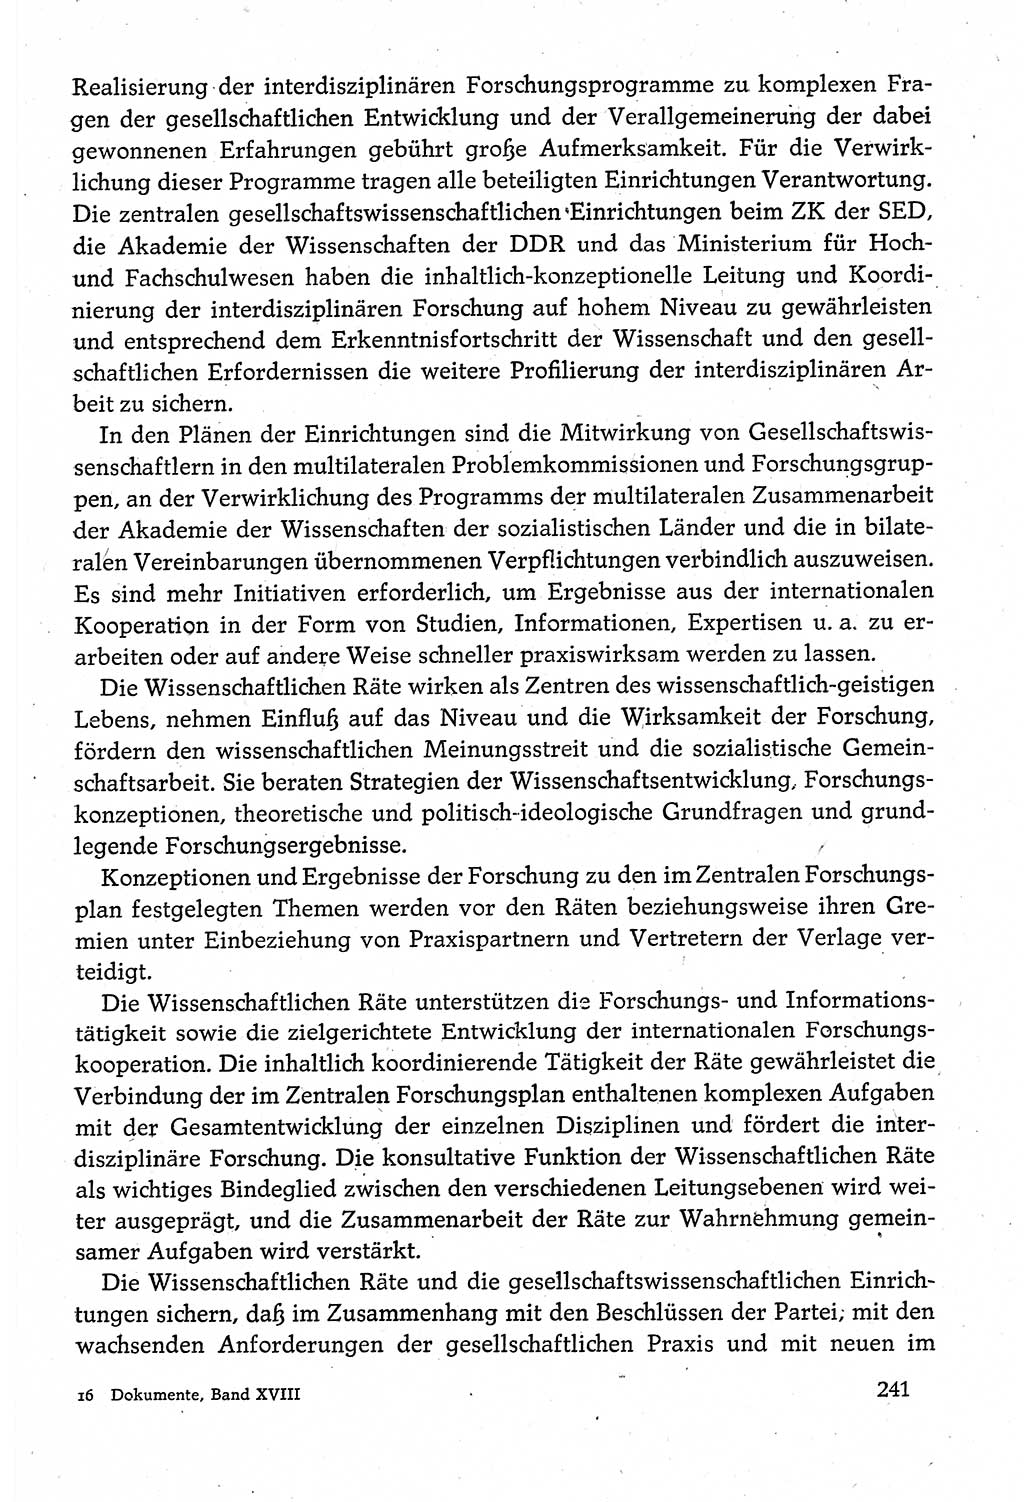 Dokumente der Sozialistischen Einheitspartei Deutschlands (SED) [Deutsche Demokratische Republik (DDR)] 1980-1981, Seite 241 (Dok. SED DDR 1980-1981, S. 241)